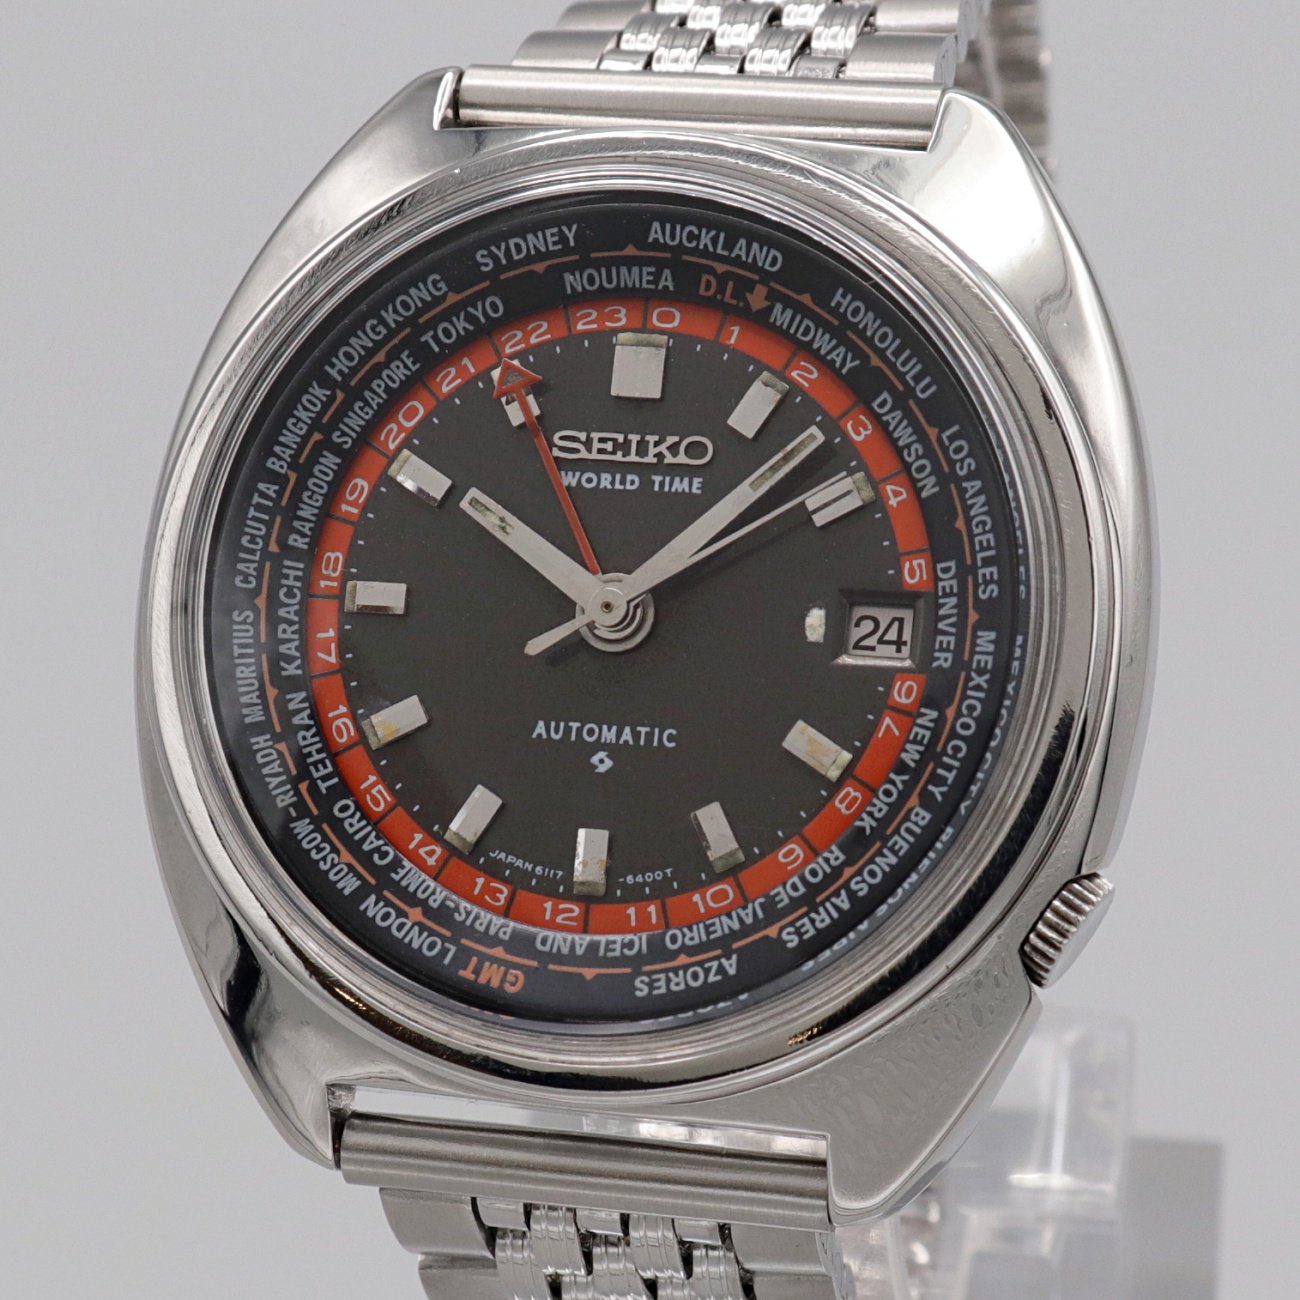 【訳あり】セイコー6117-6400ワールドタイム腕時計メンズ自動巻き70年代サトお得情報はプロフみてね時計